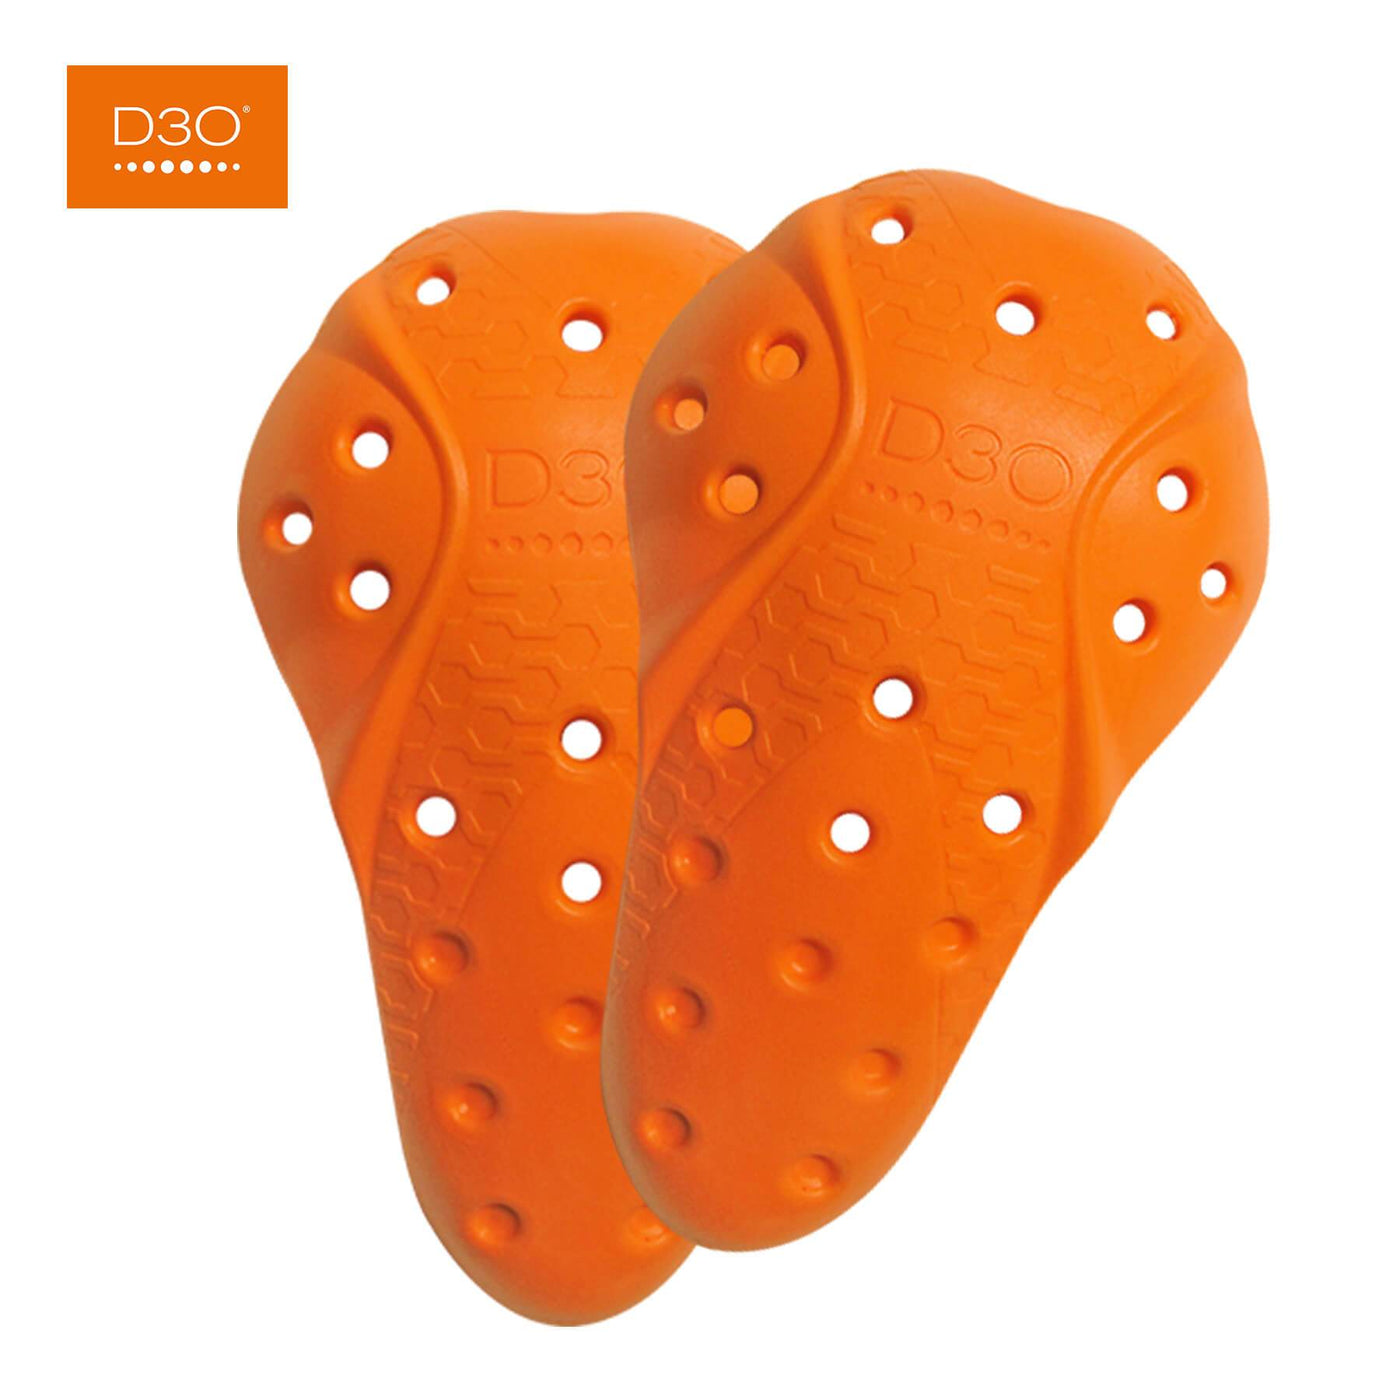 D30 Protektoren-Set für die Knie Orange D30 – Bad and Bold